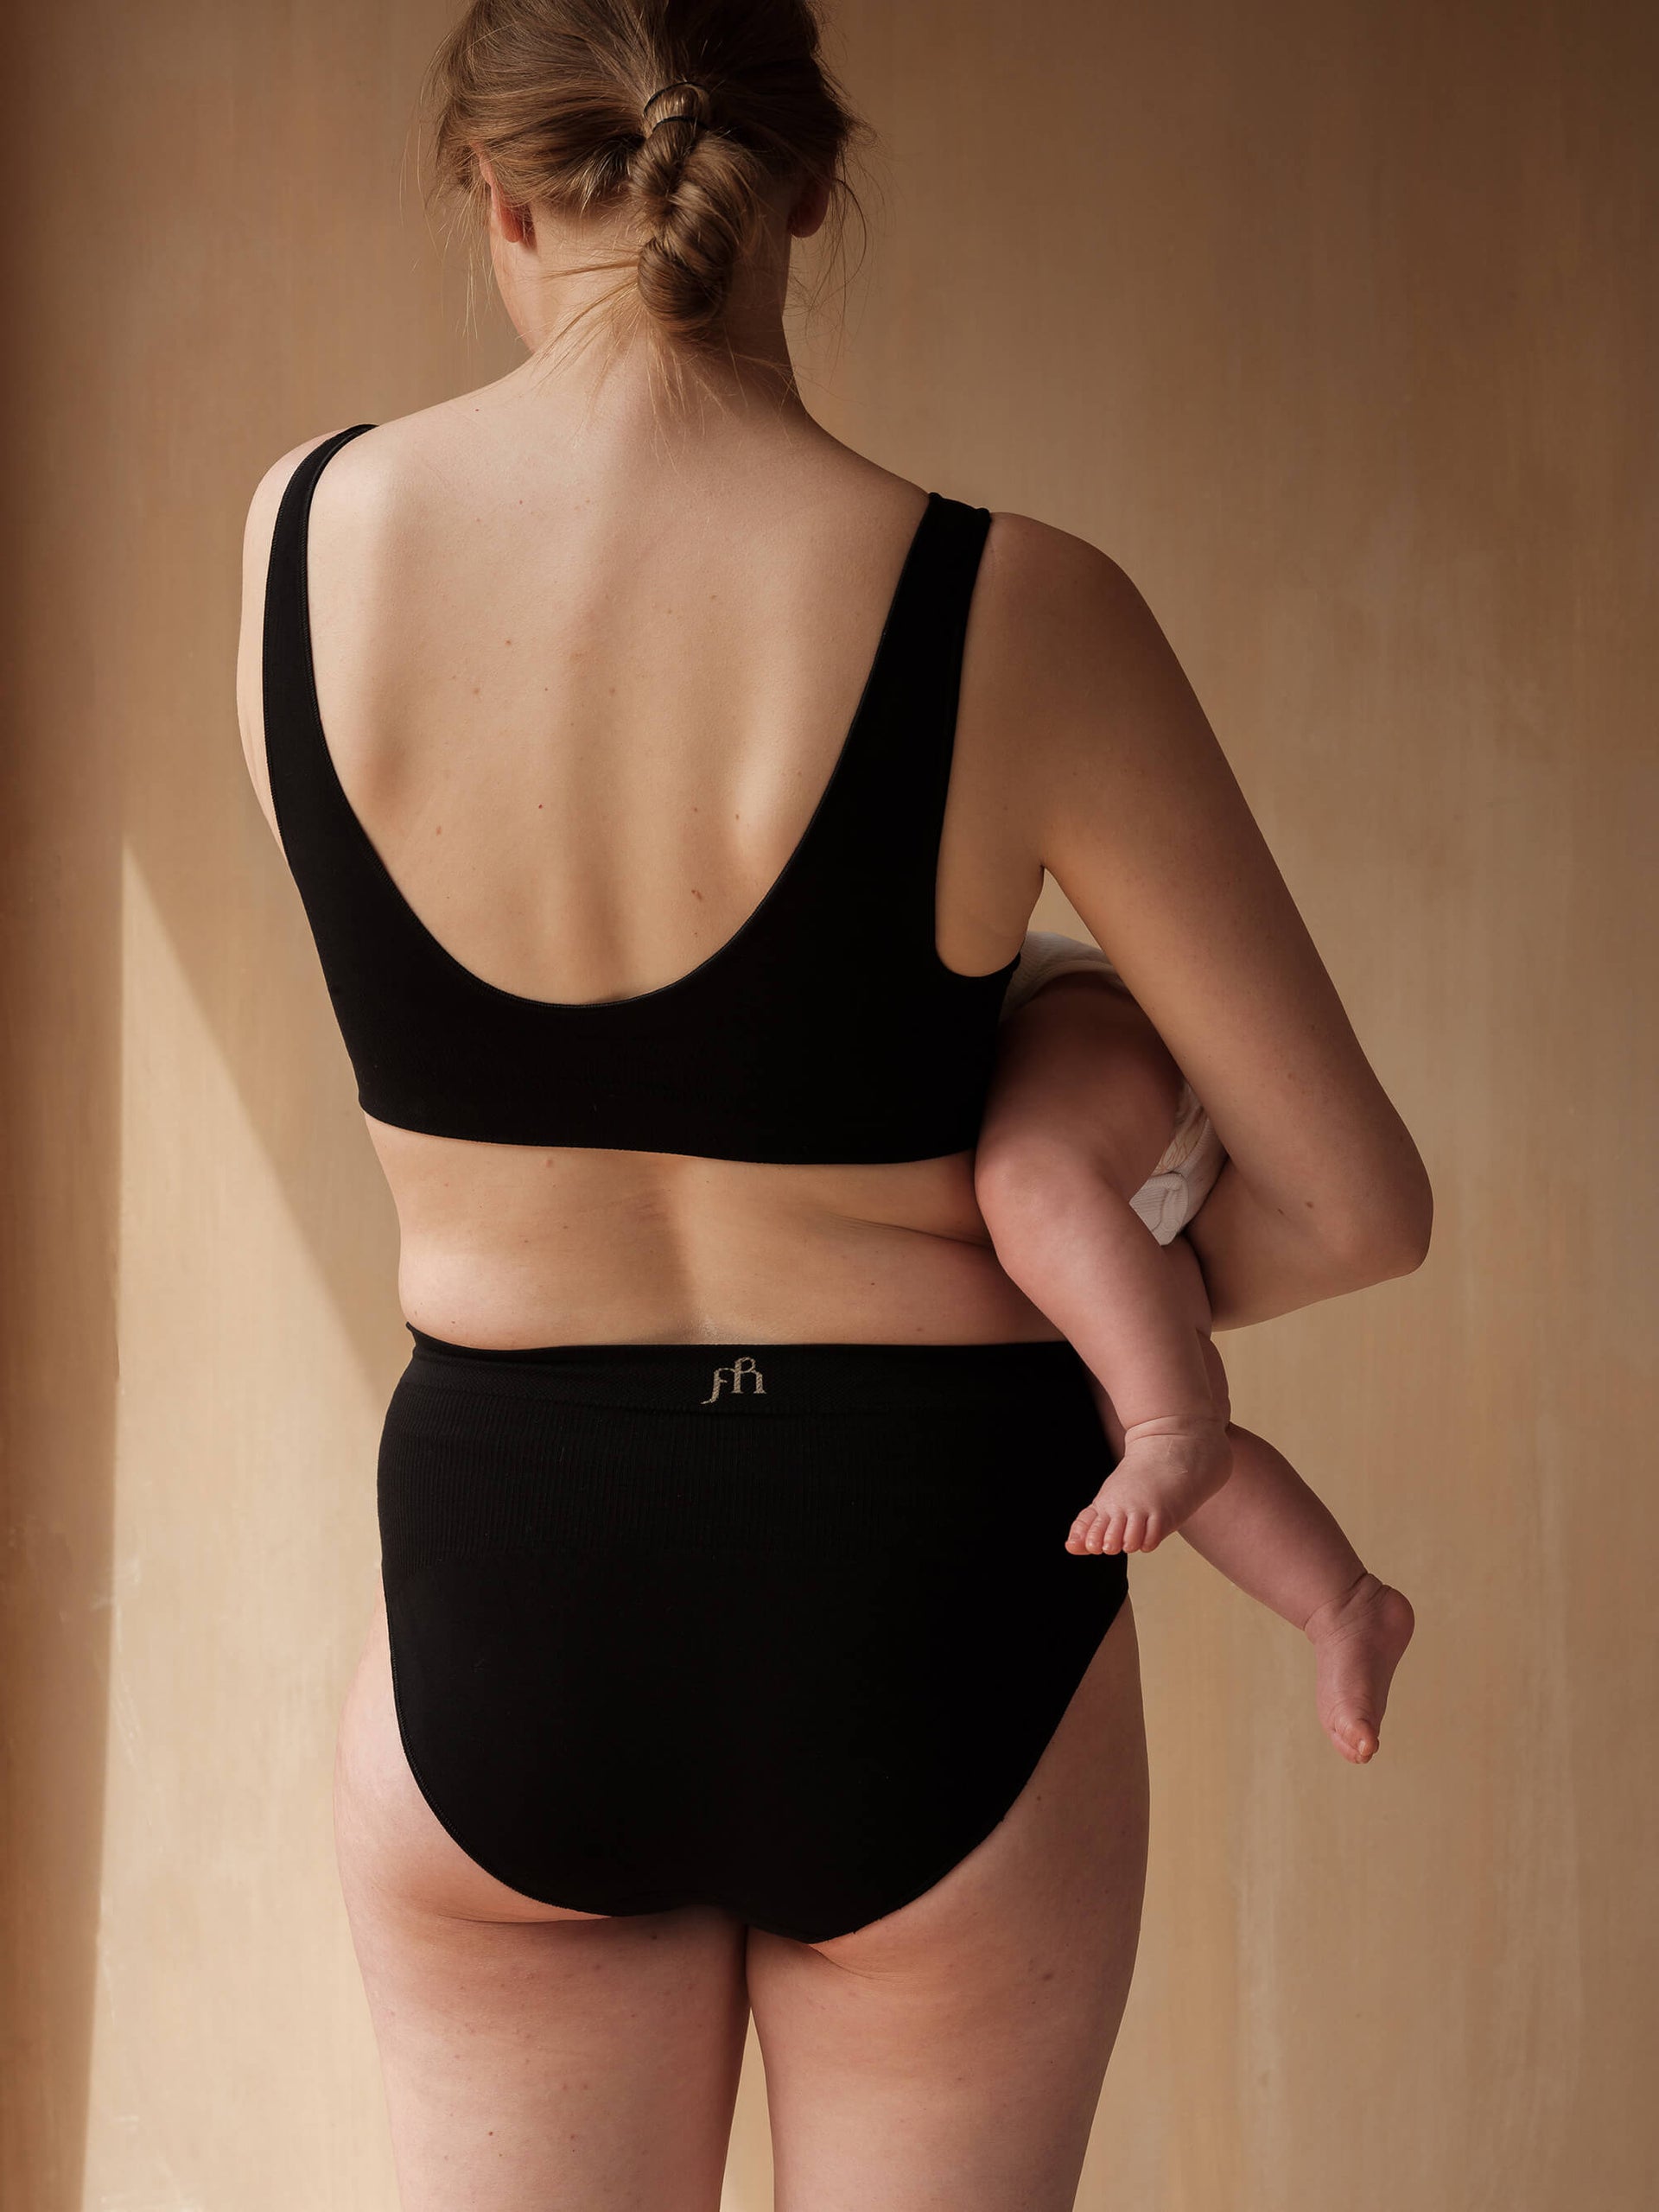 Jorgen House black support briefs and underwear bra on female body breastfeeding her baby